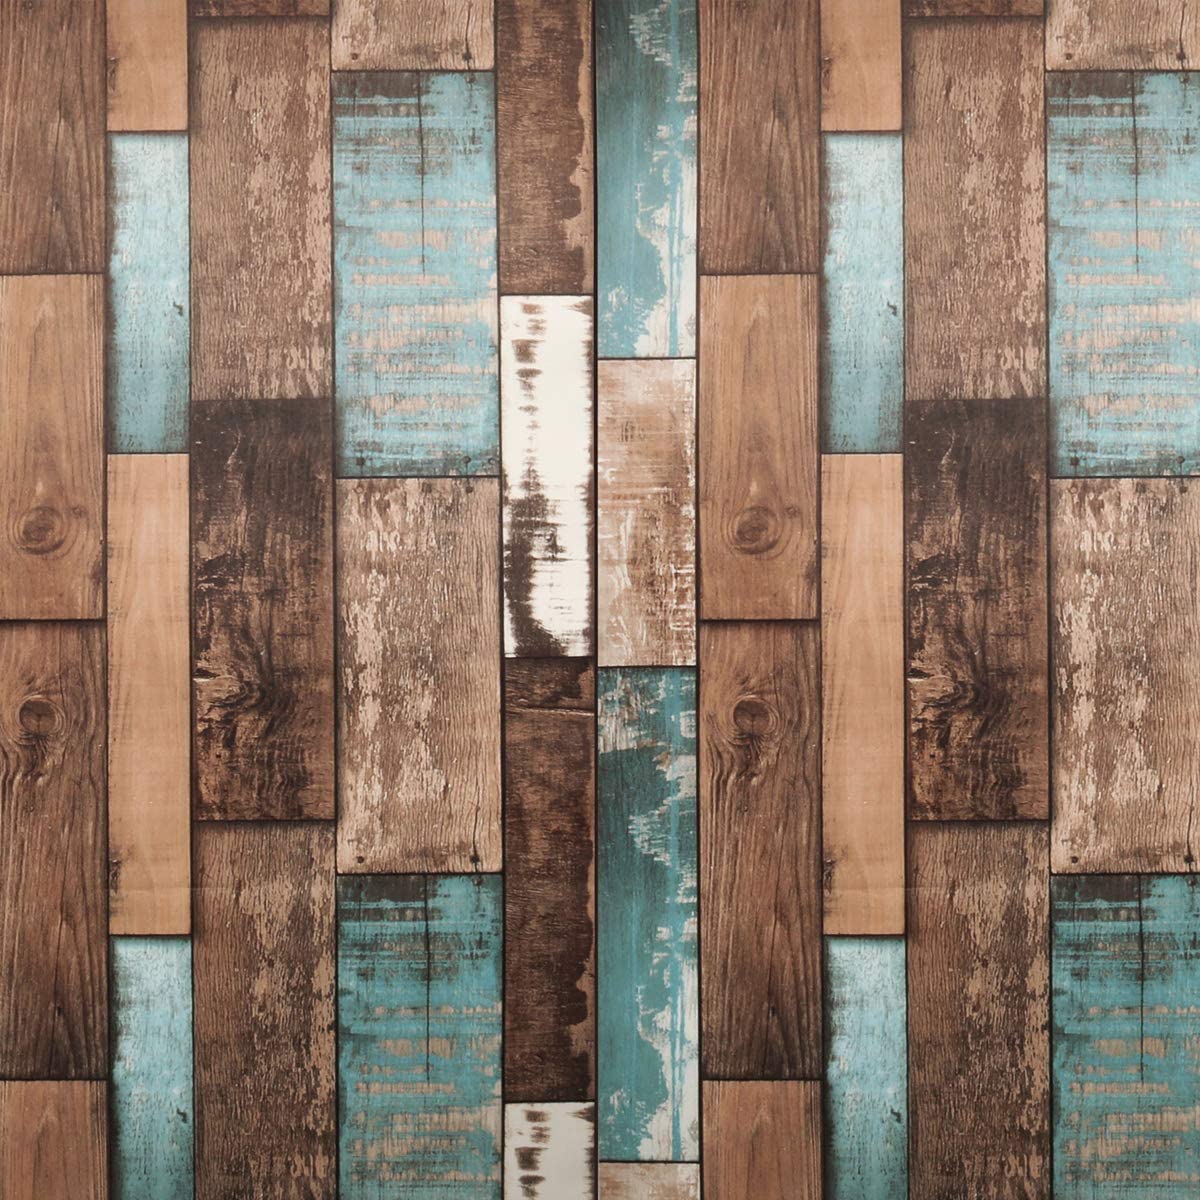 Hình nền gỗ nhà kho - Bạn muốn tìm kiếm một sự lựa chọn trang trí nội thất độc đáo và thú vị? Hãy tham khảo hình nền gỗ nhà kho! Với vẻ đẹp thô, chất lượng và độ bền cao, hình ảnh này sẽ mang đến một không gian sống đầy màu sắc cho bạn.